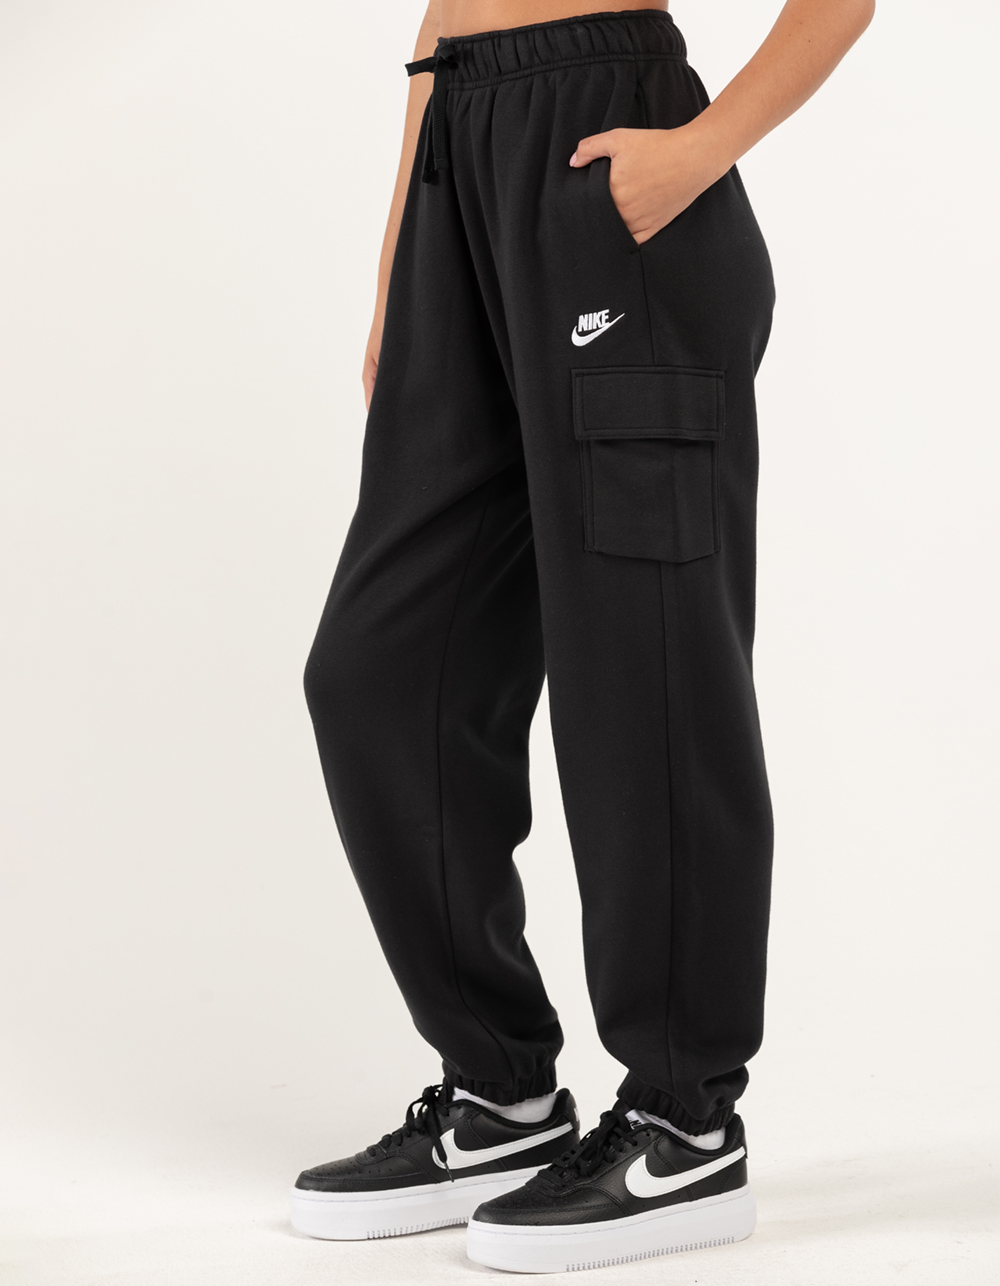 NIKE Sportswear Essentials Fleece Cargo Sweatpants - BLACK | Tillys